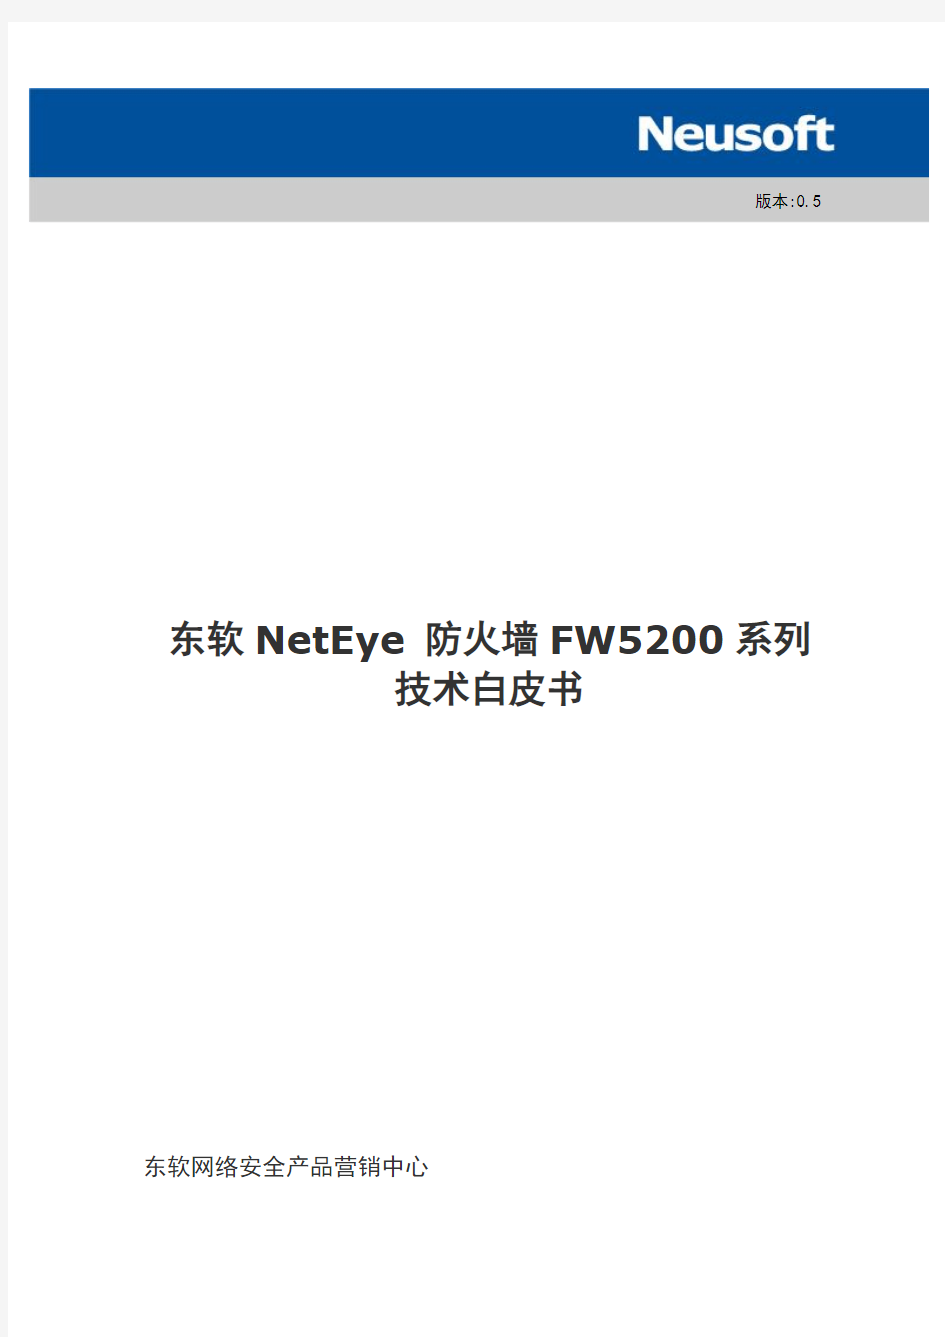 FW5200-技术白皮书-v0.5